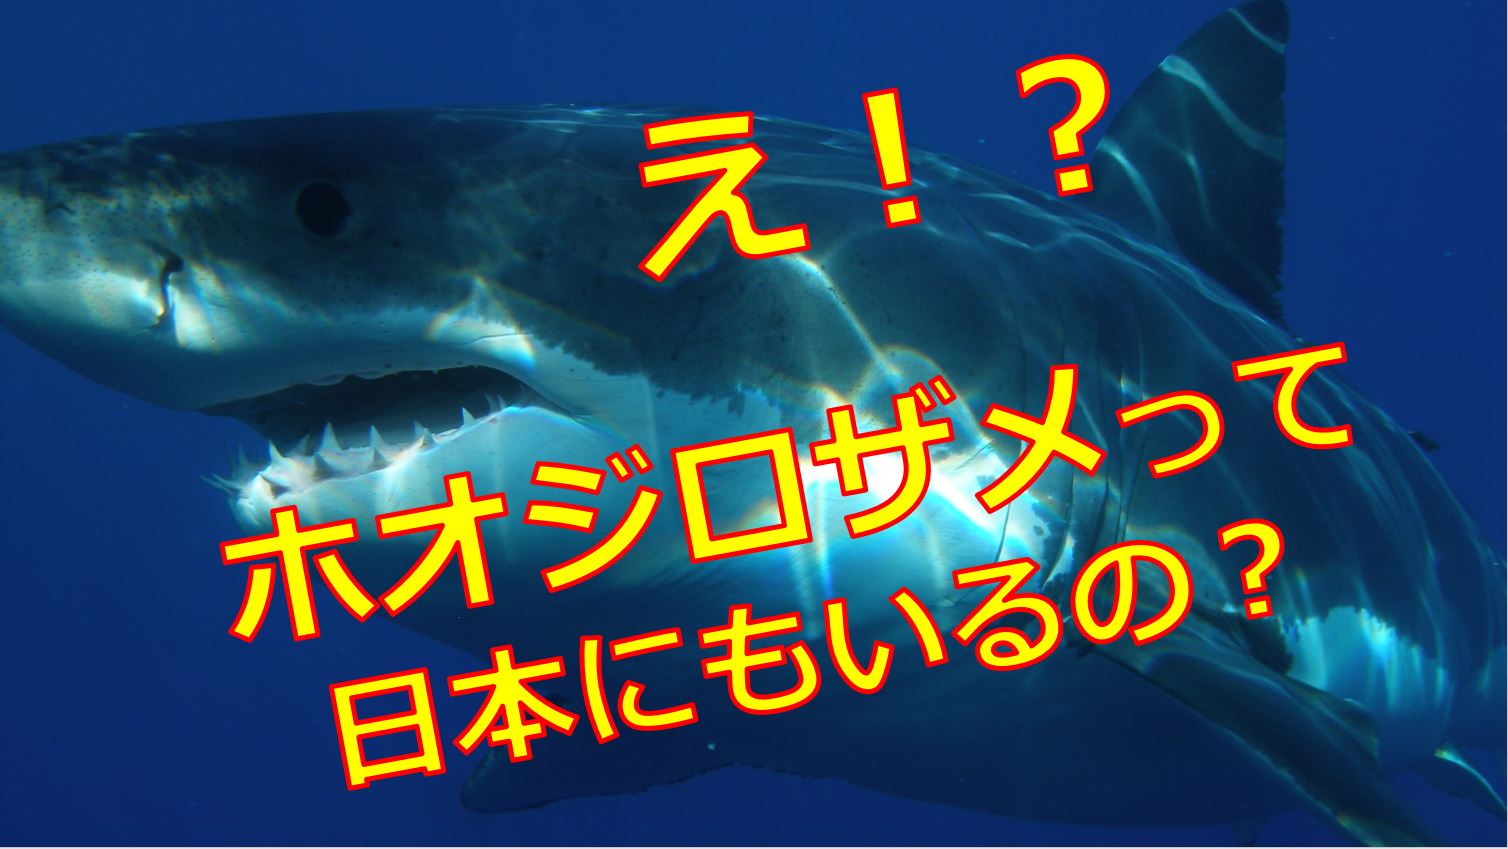 ホオジロザメが日本の海に生息している 被害や事故は過去にあったの 海鮮アクアリウム 海の生き物 魚介料理を楽しむためのブログ